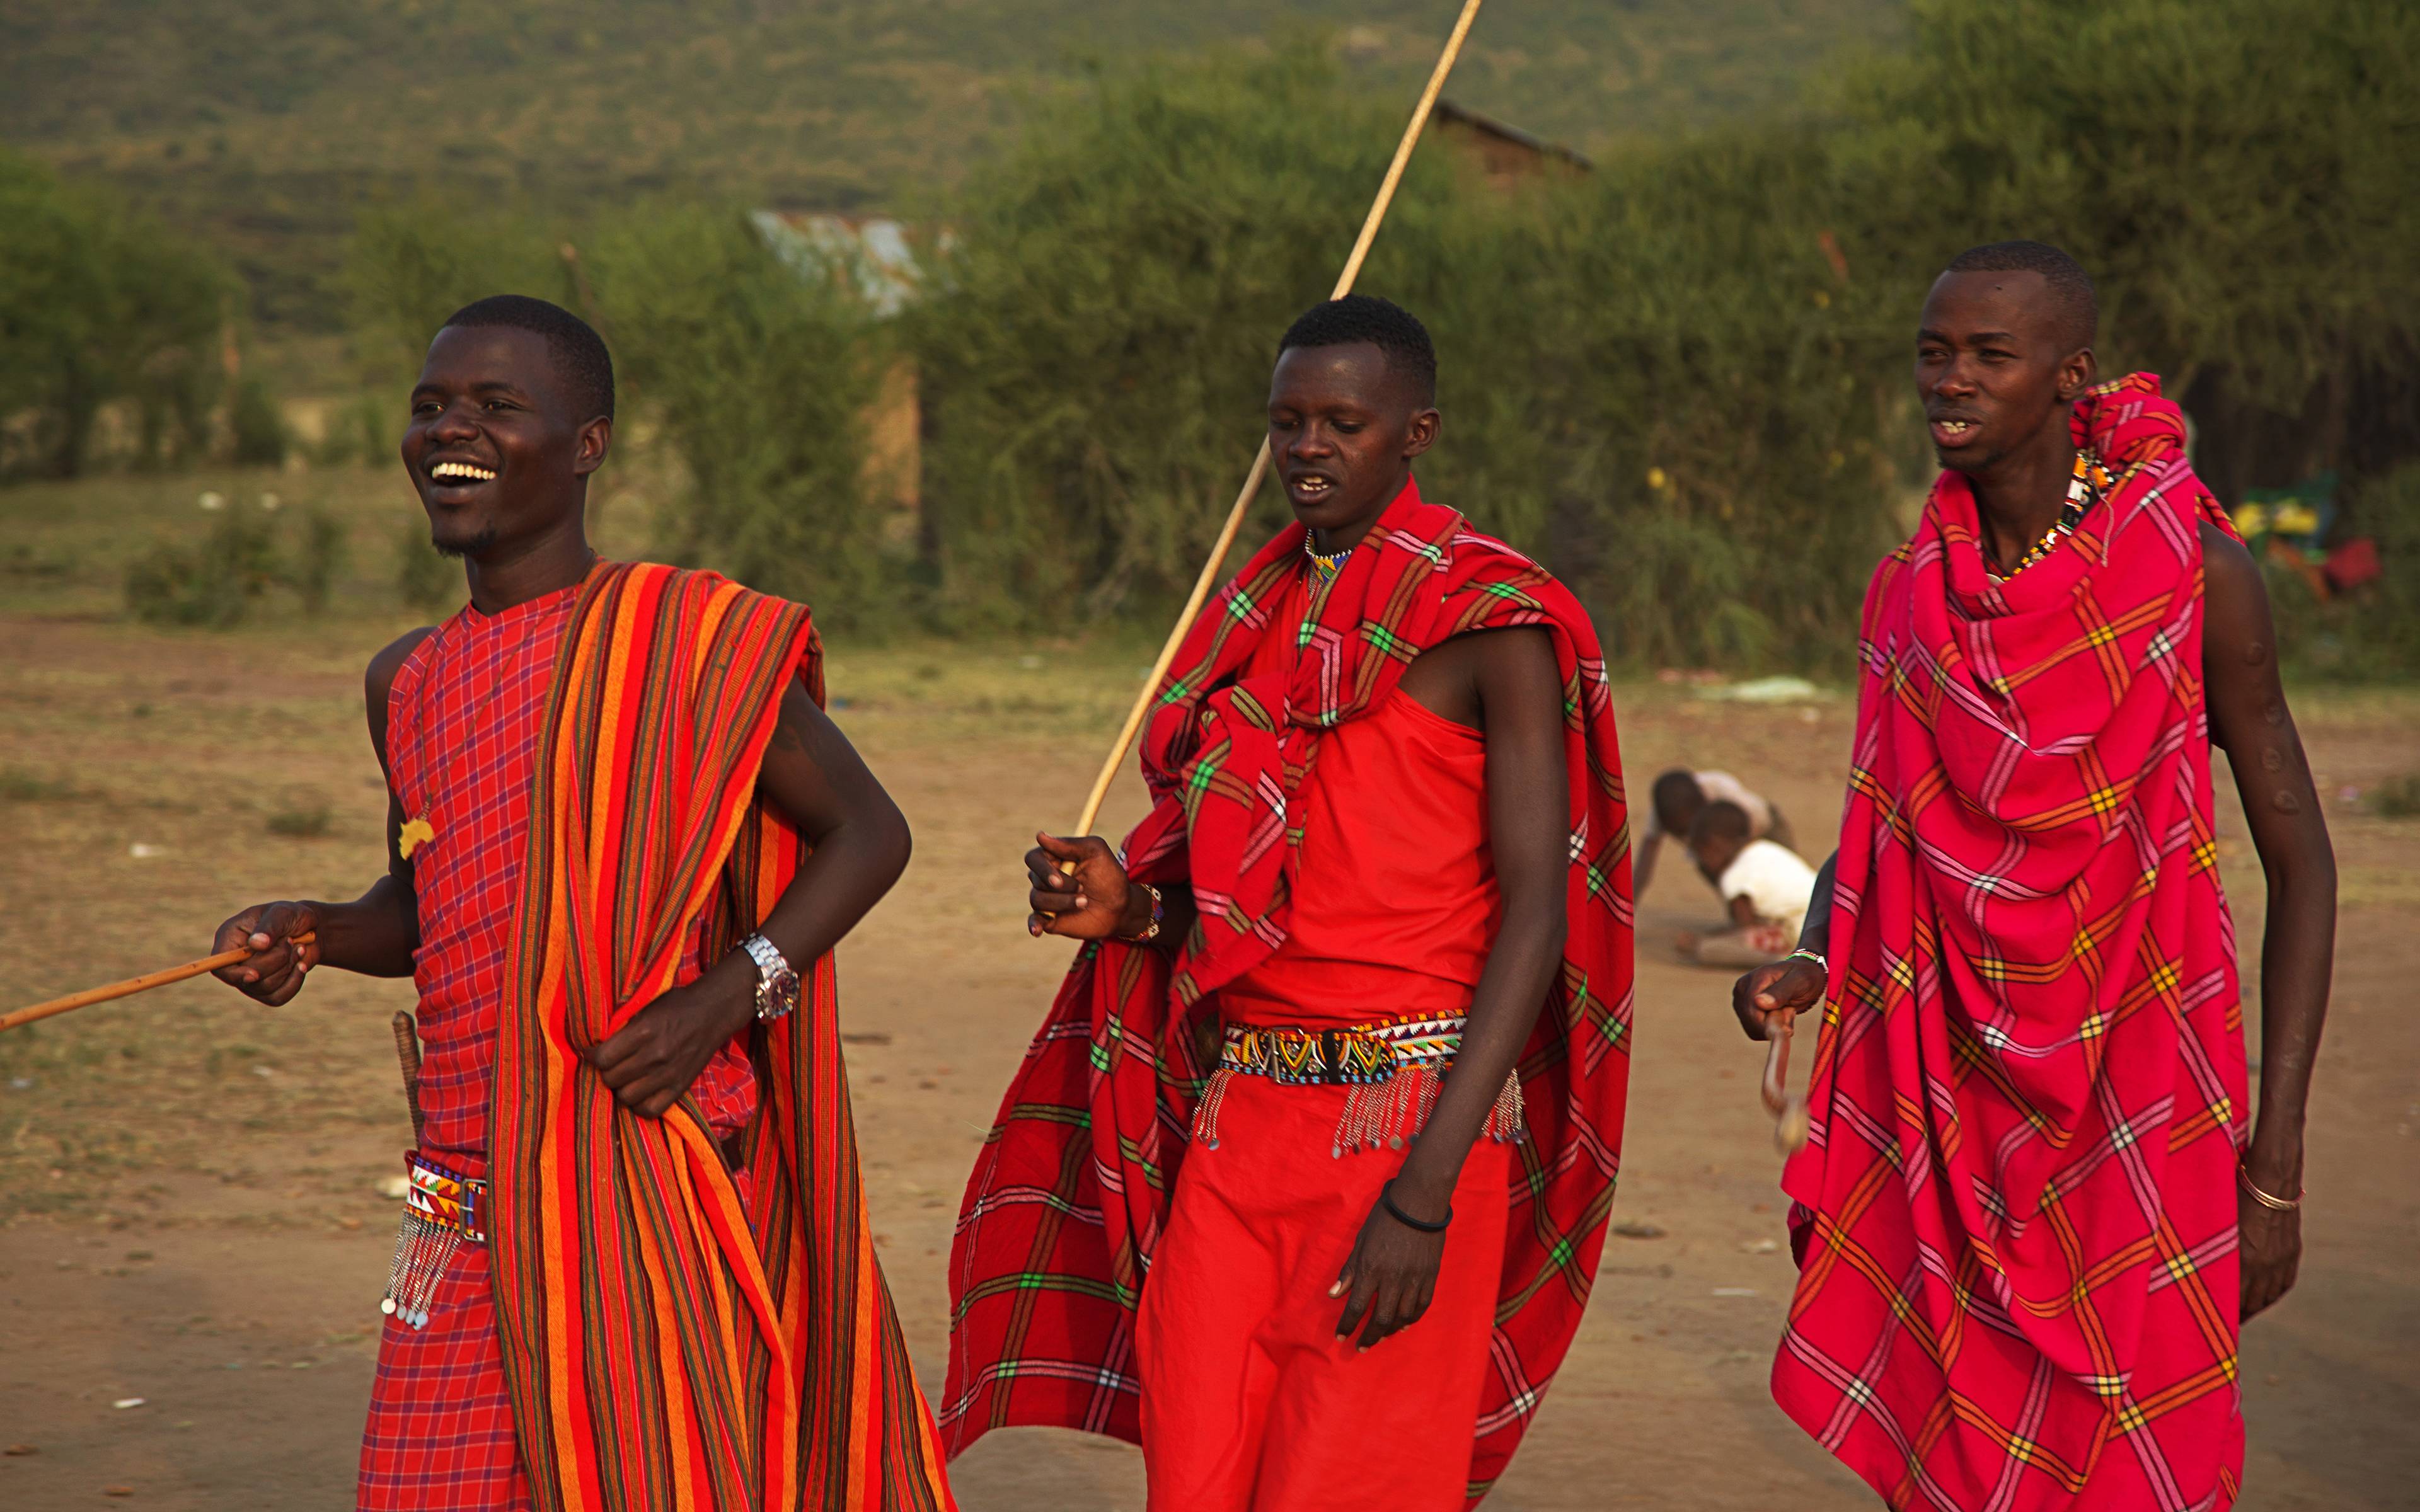 Willkommen im tierreichsten Gebiet von Afrika - der Masai Mara